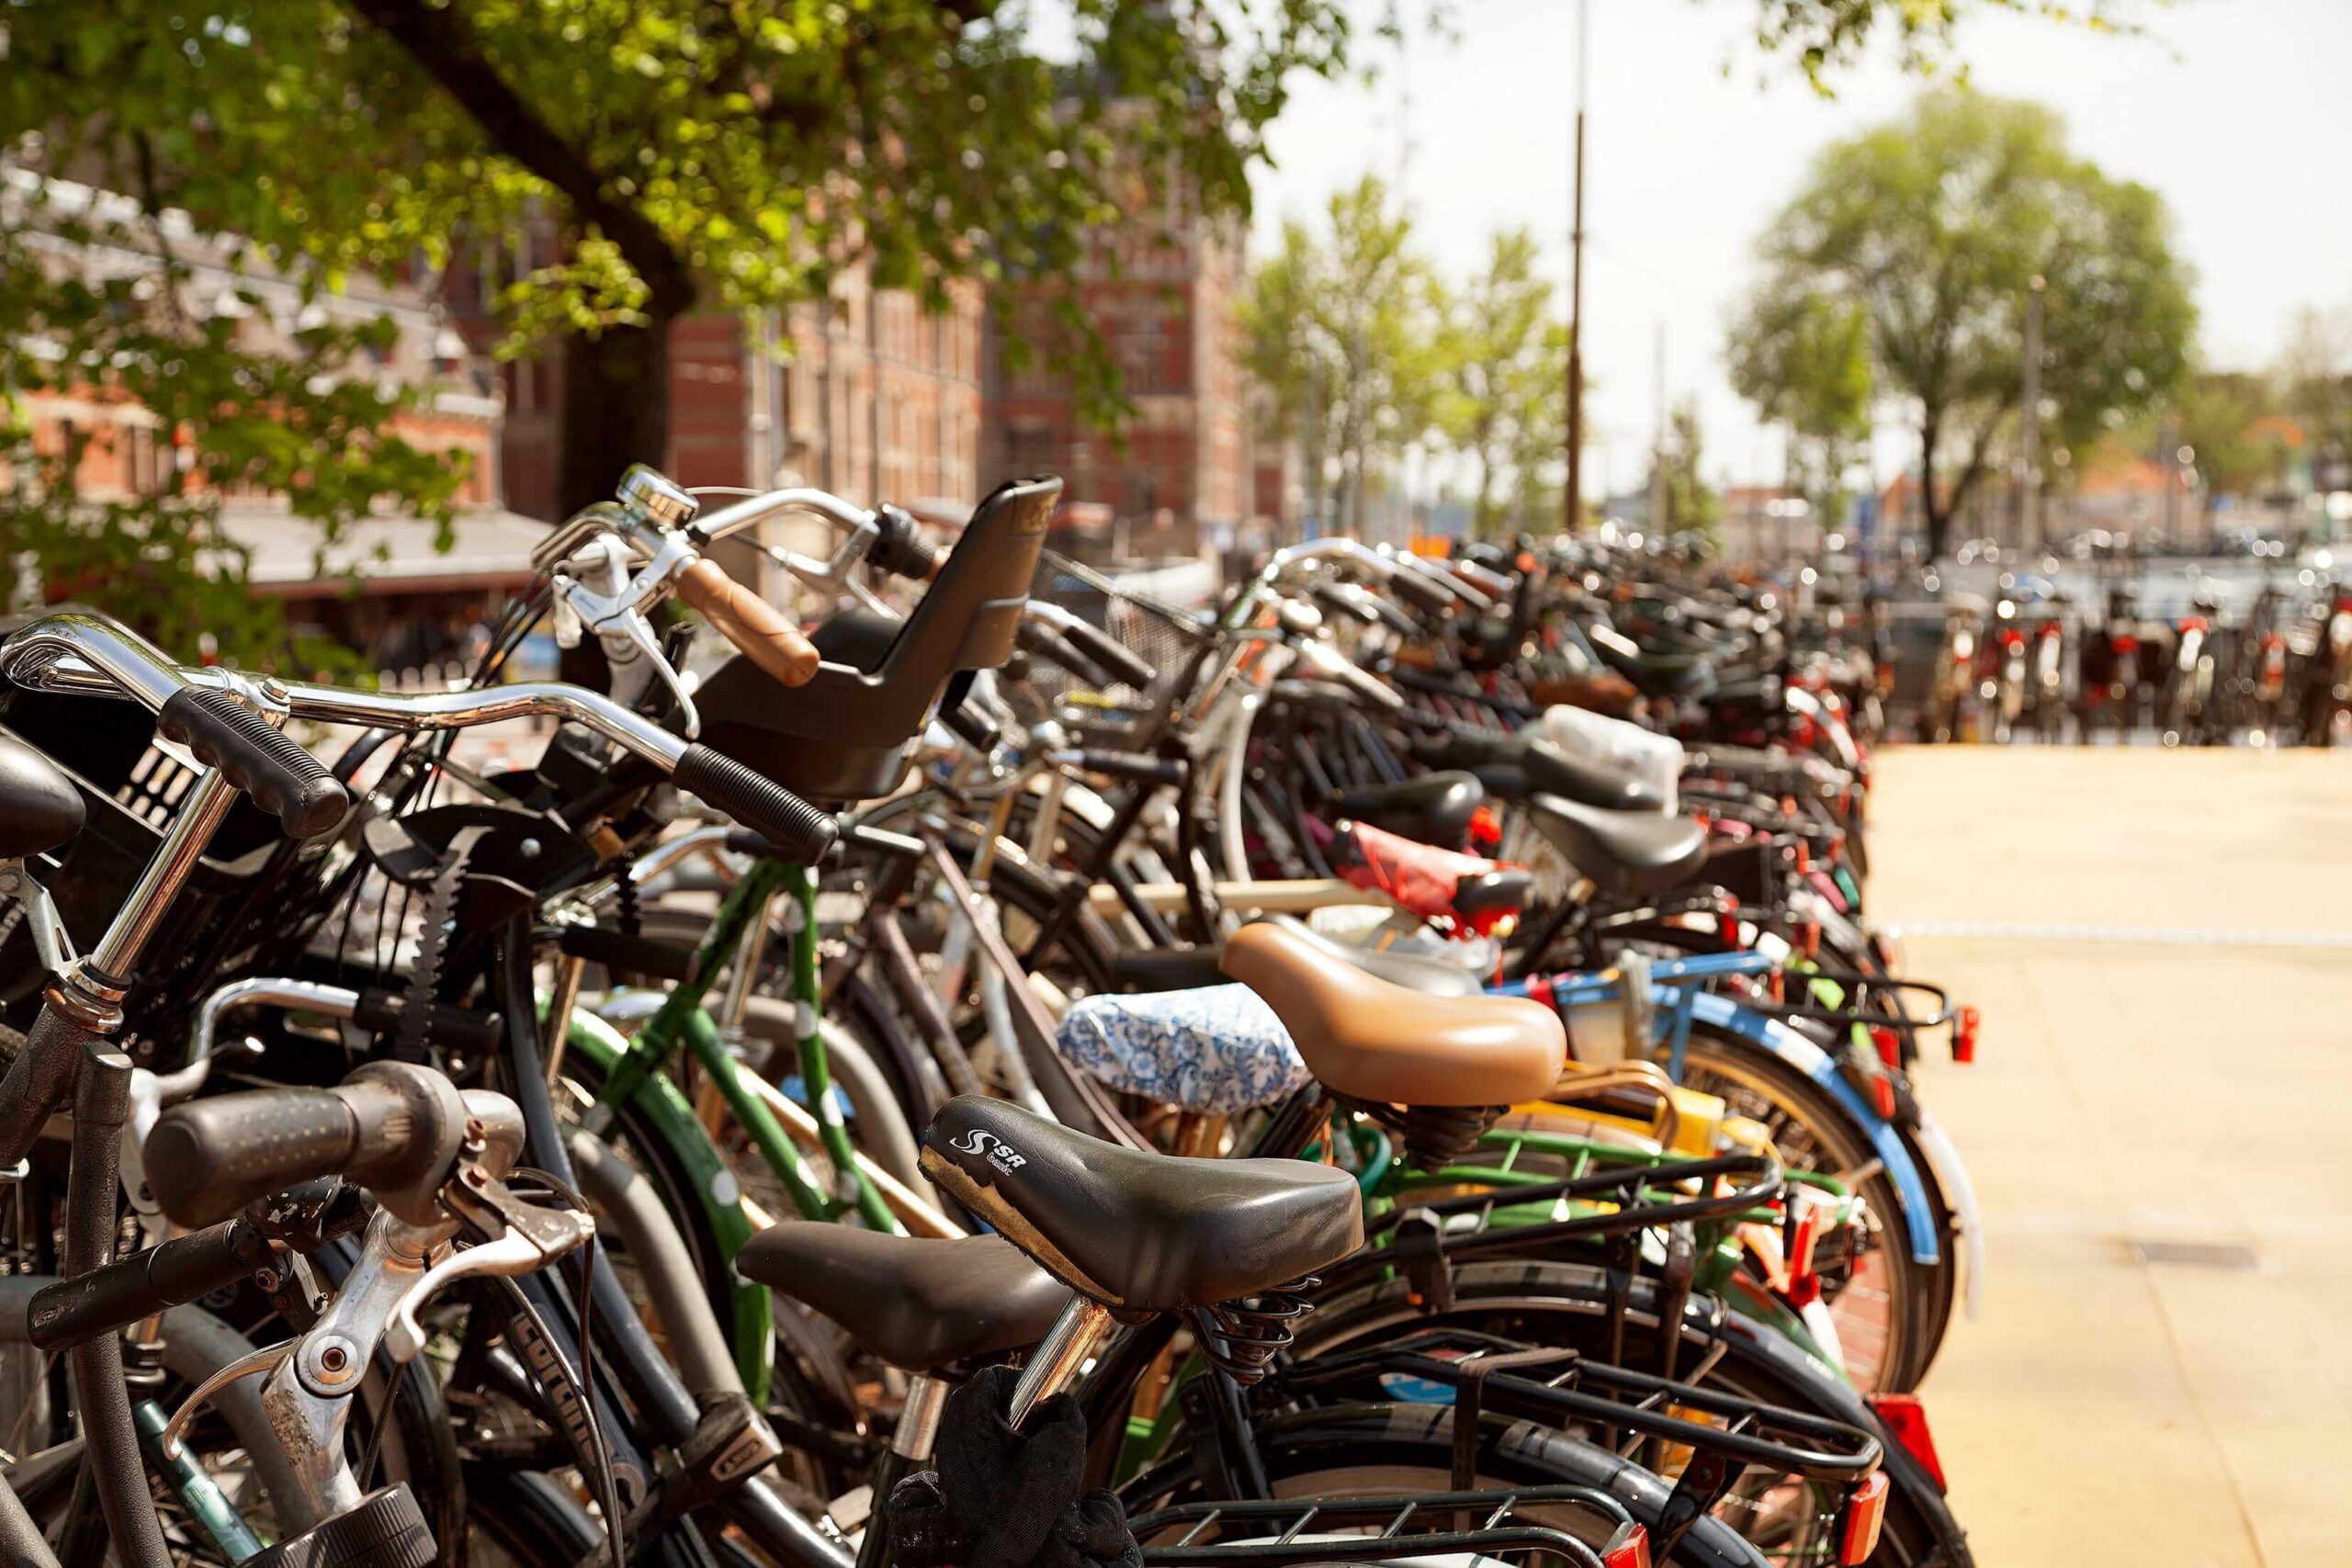 BEATBRDG Music Industry Internships - Amsterdam is truly a bike friendly city